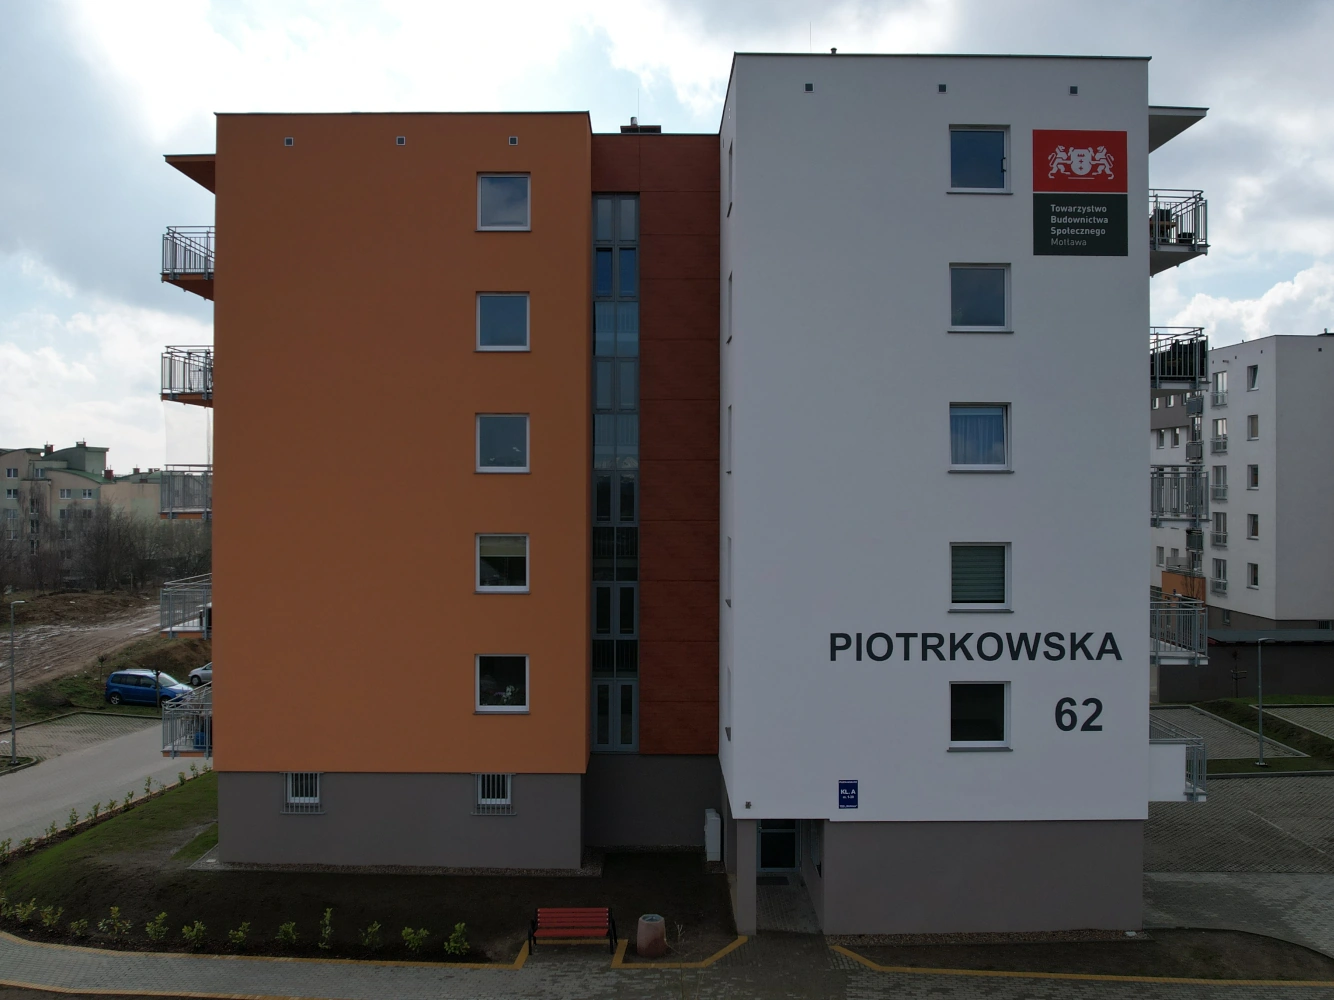 Gdański deweloper Budros oddał do użytkowania kolejne mieszkania w ramach systemu TBS